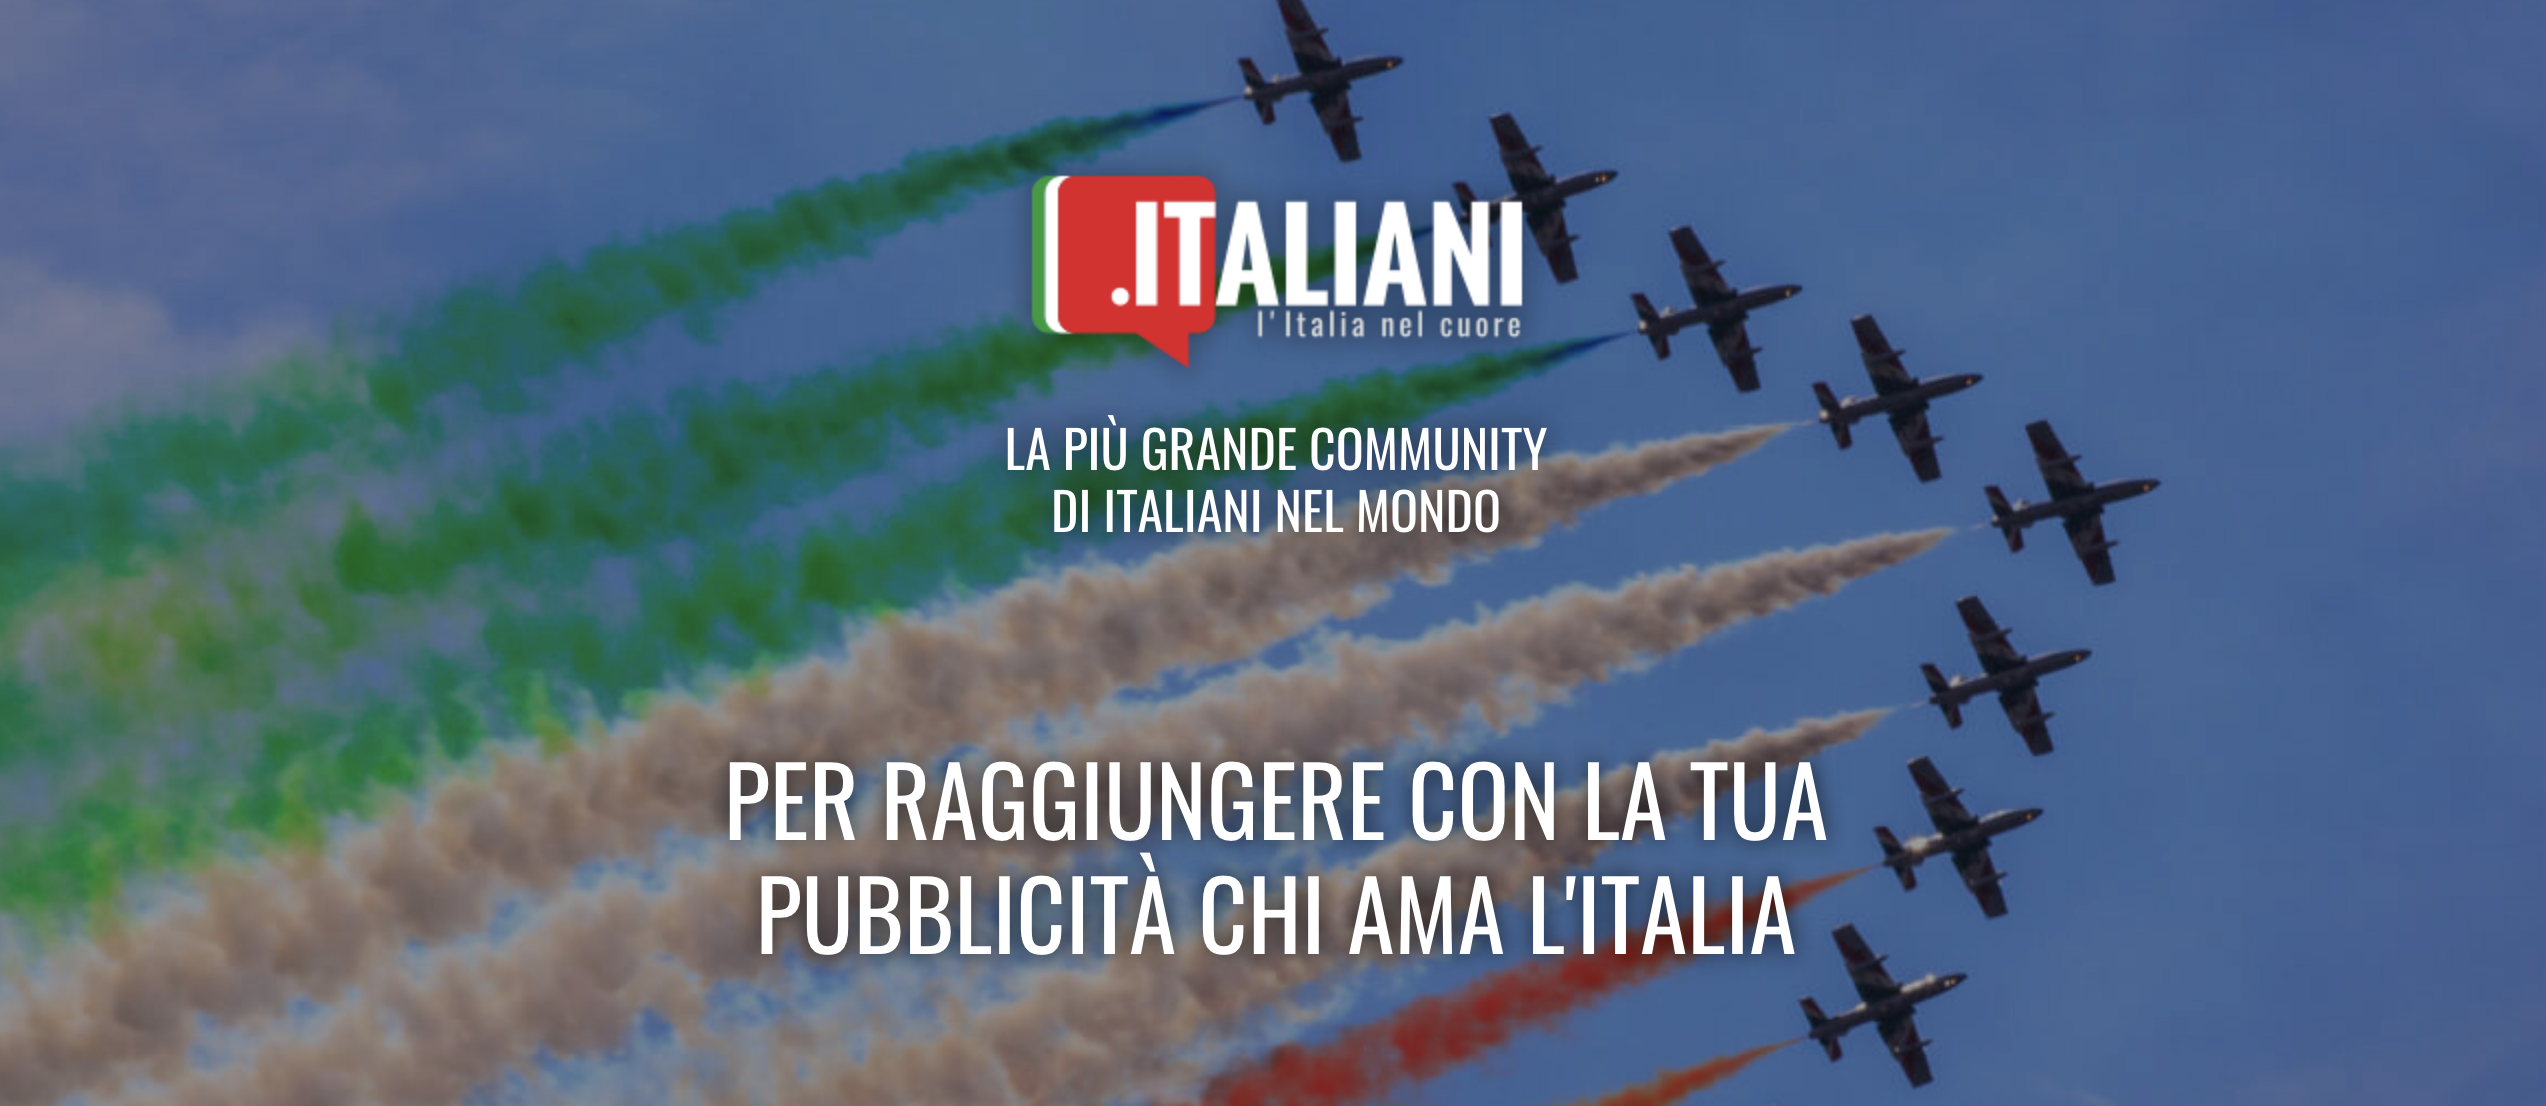 Nuovo progetto: italiani.it presenta l’area pubblicità